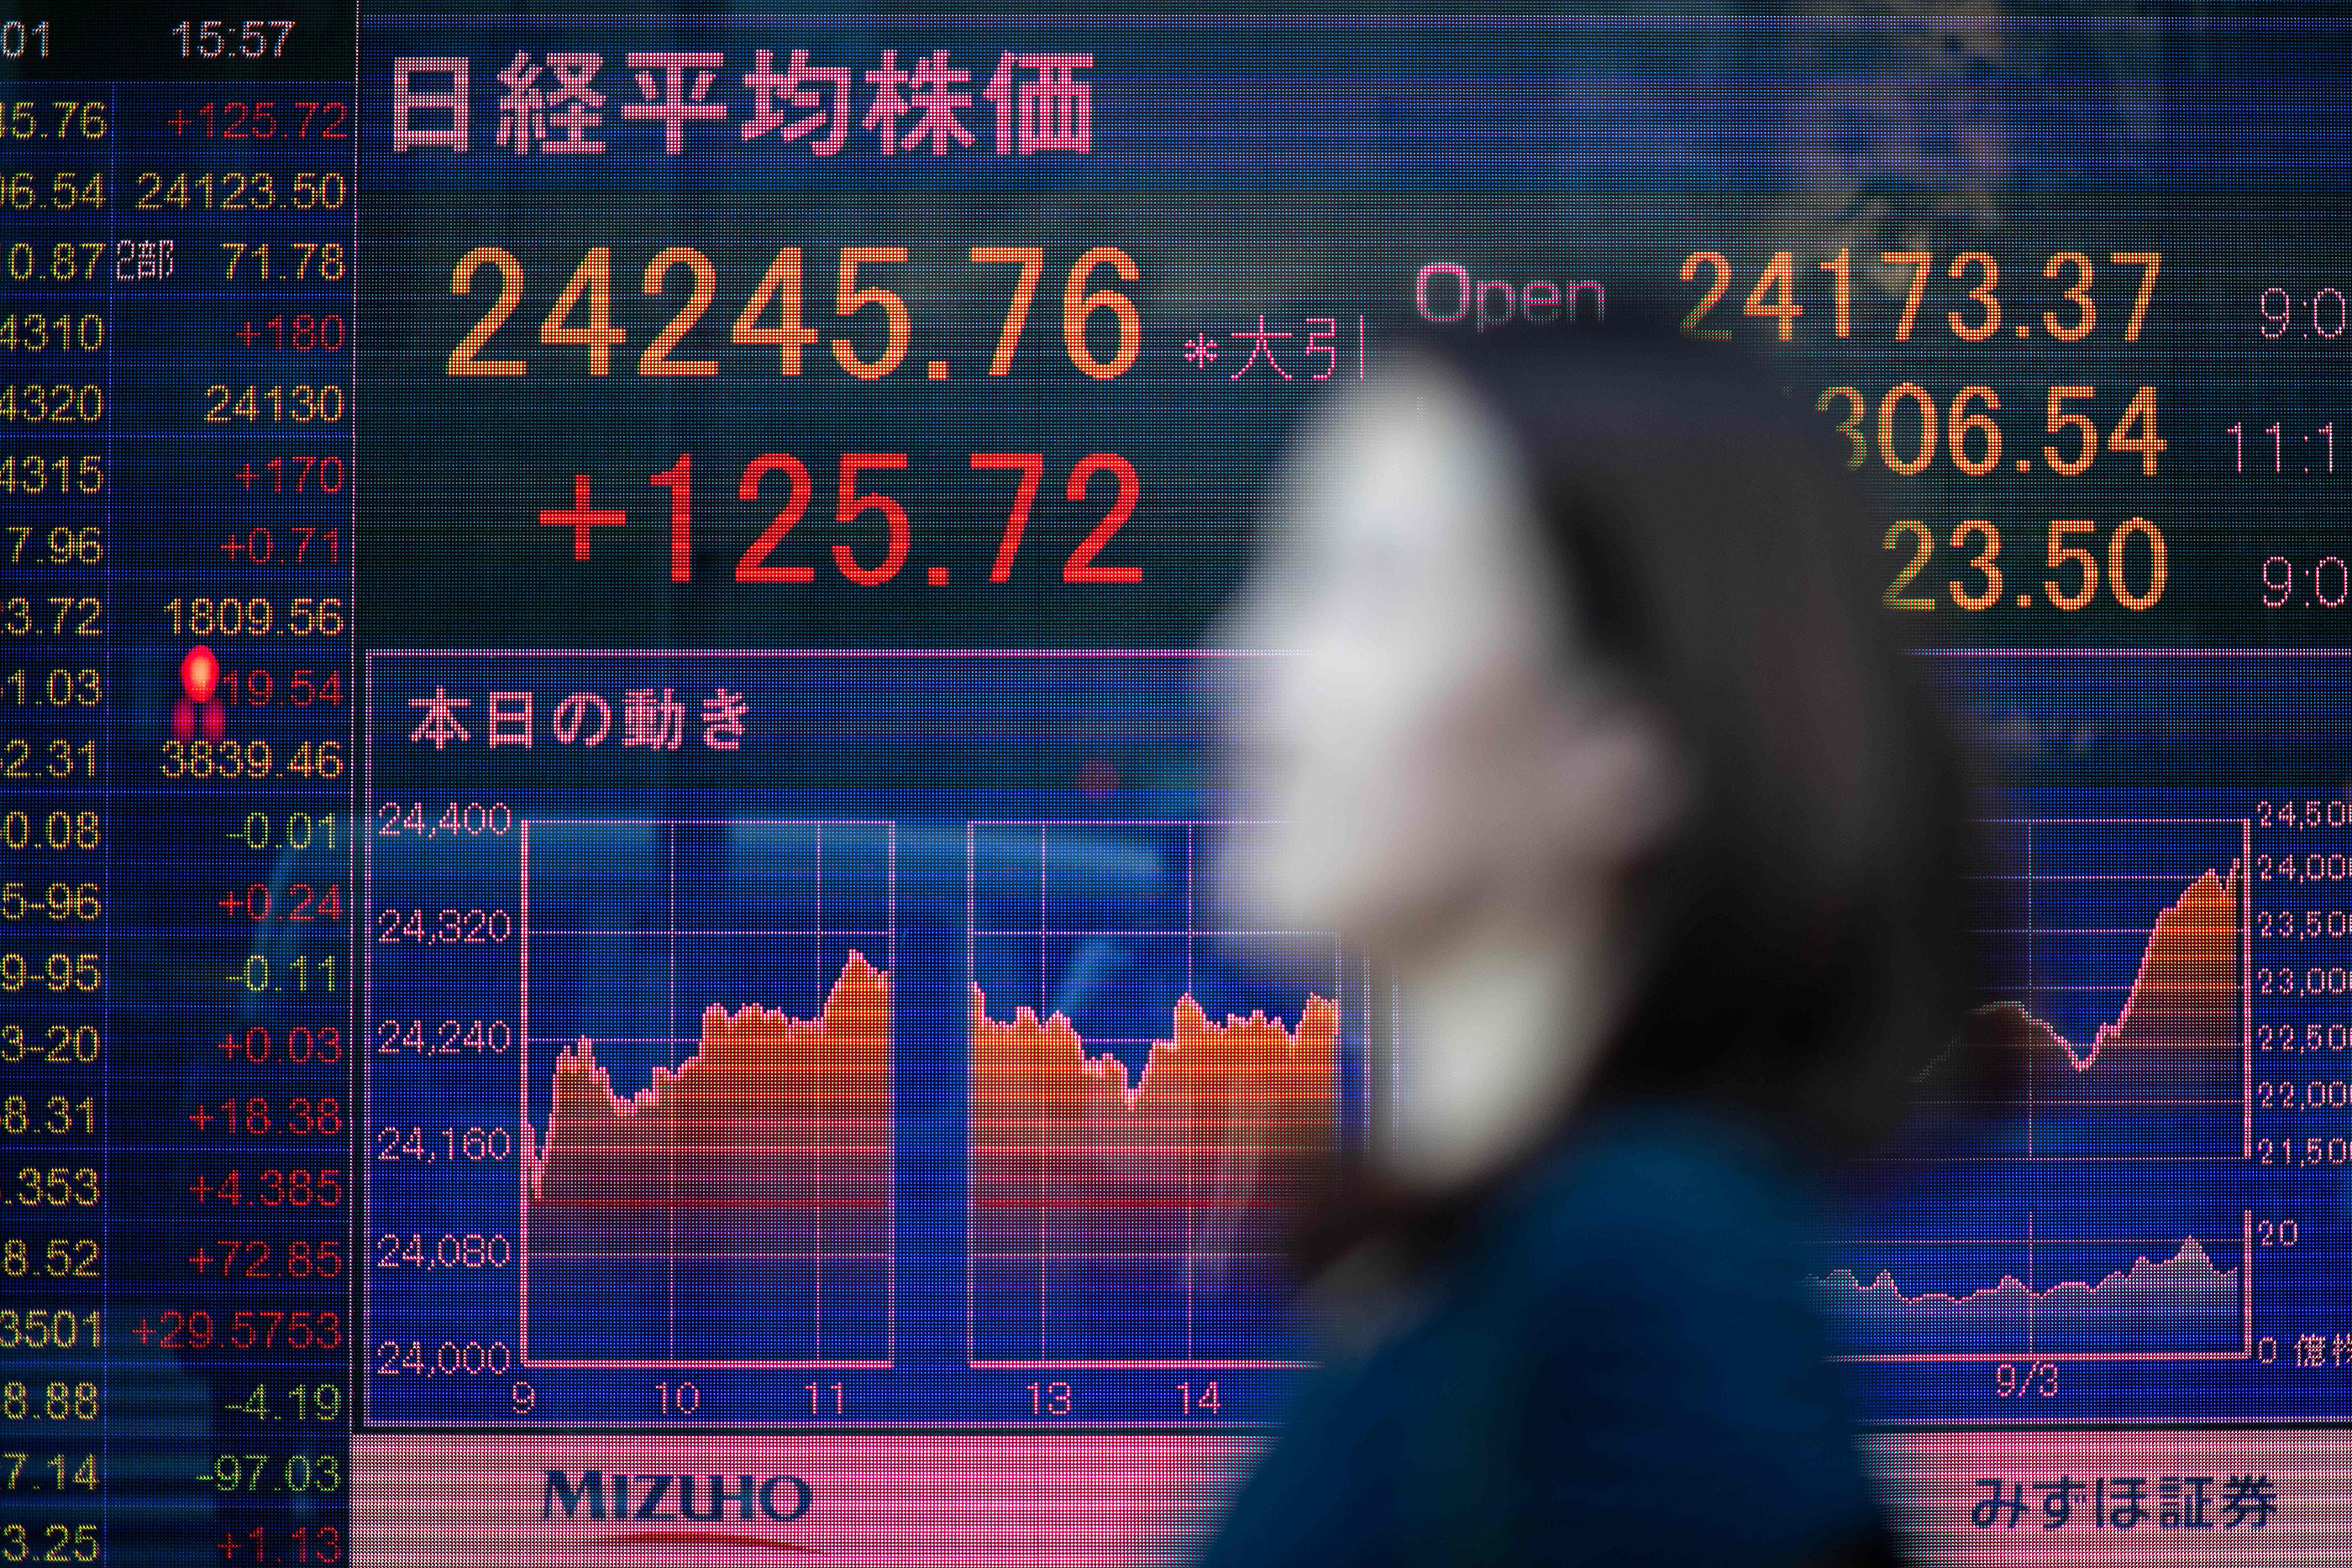 أسهم الرقائق تقود تراجعات الأسواق اليابانية